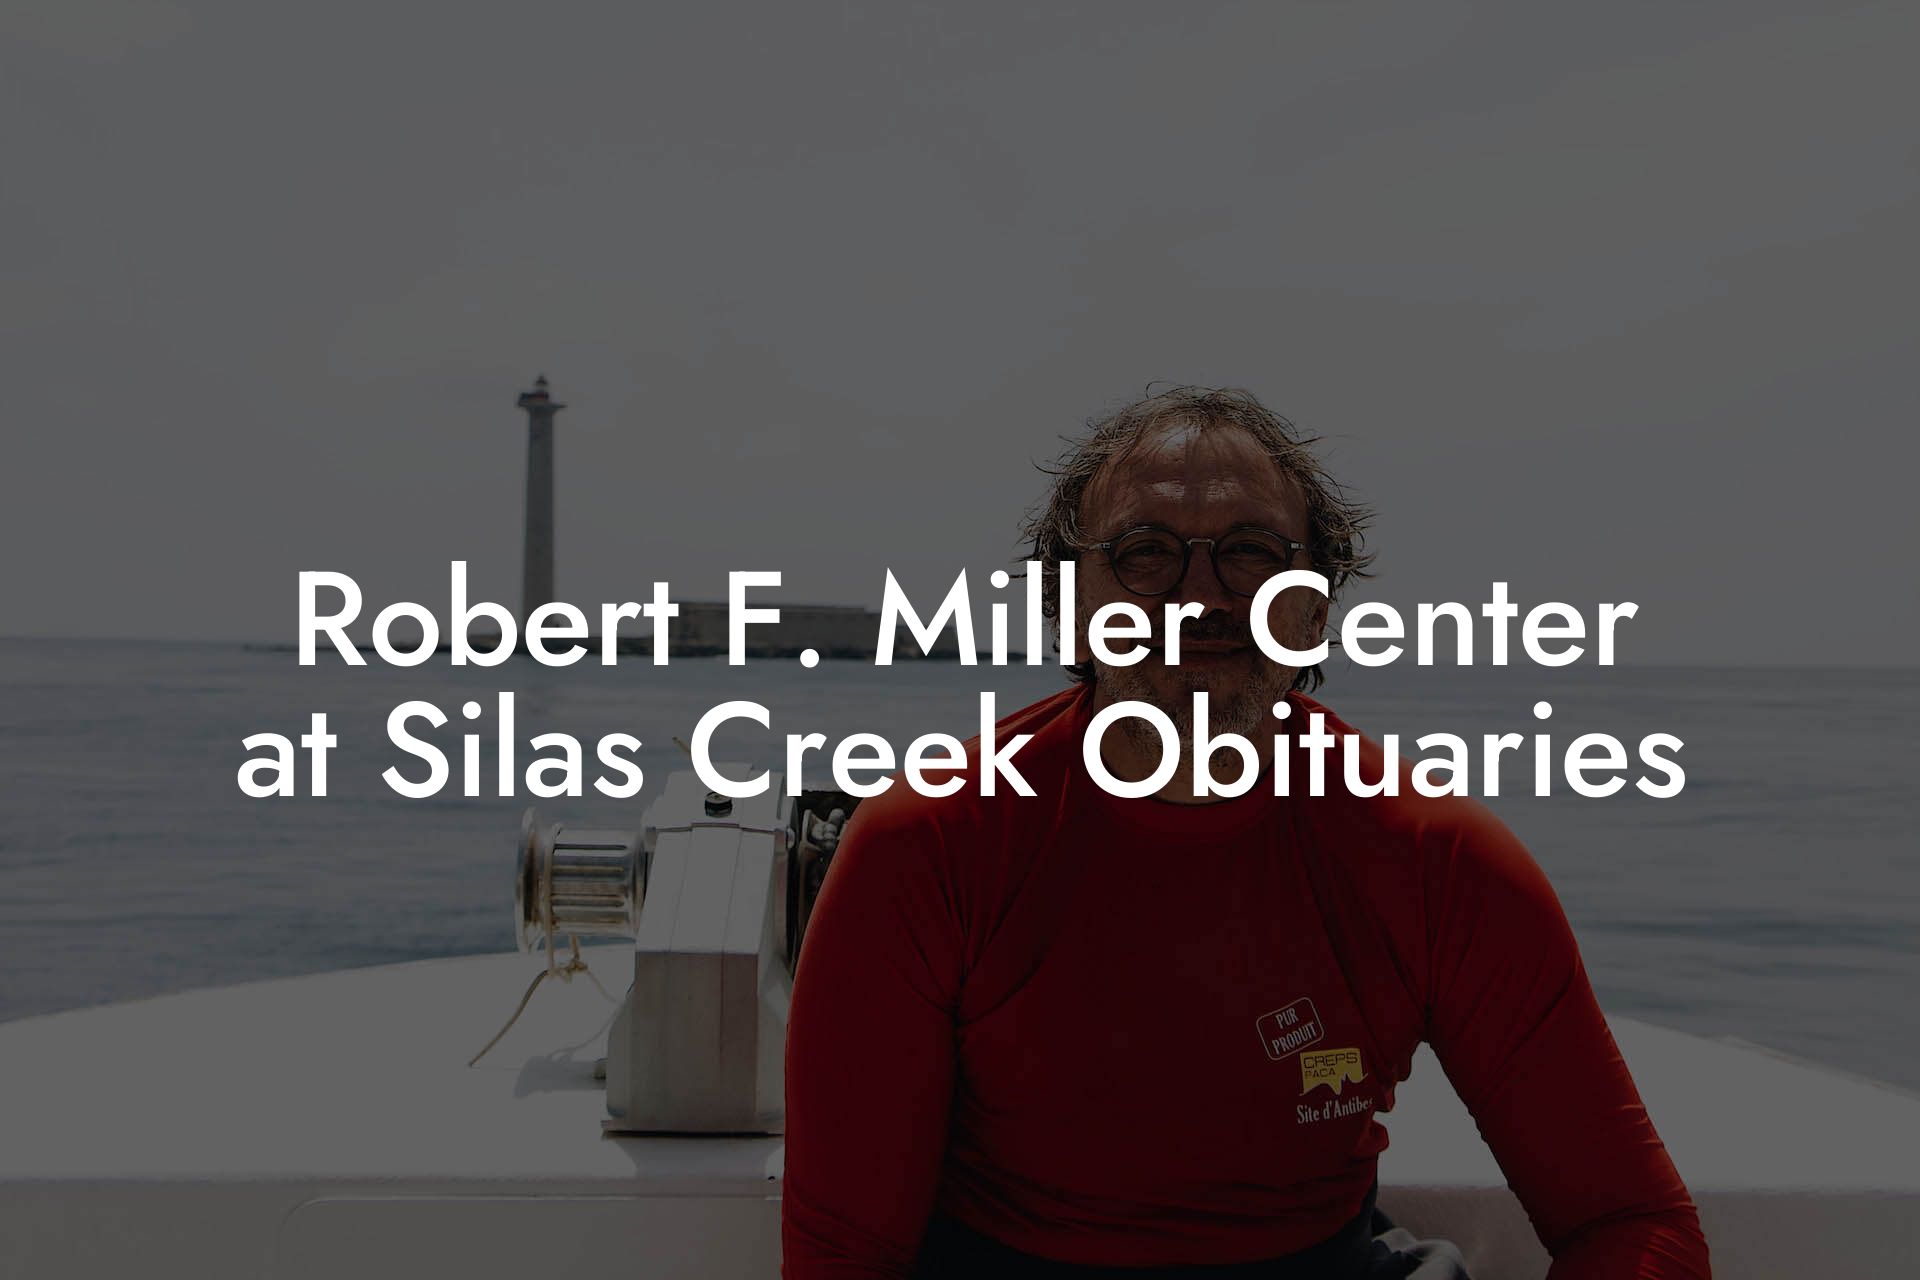 Robert F. Miller Center at Silas Creek Obituaries